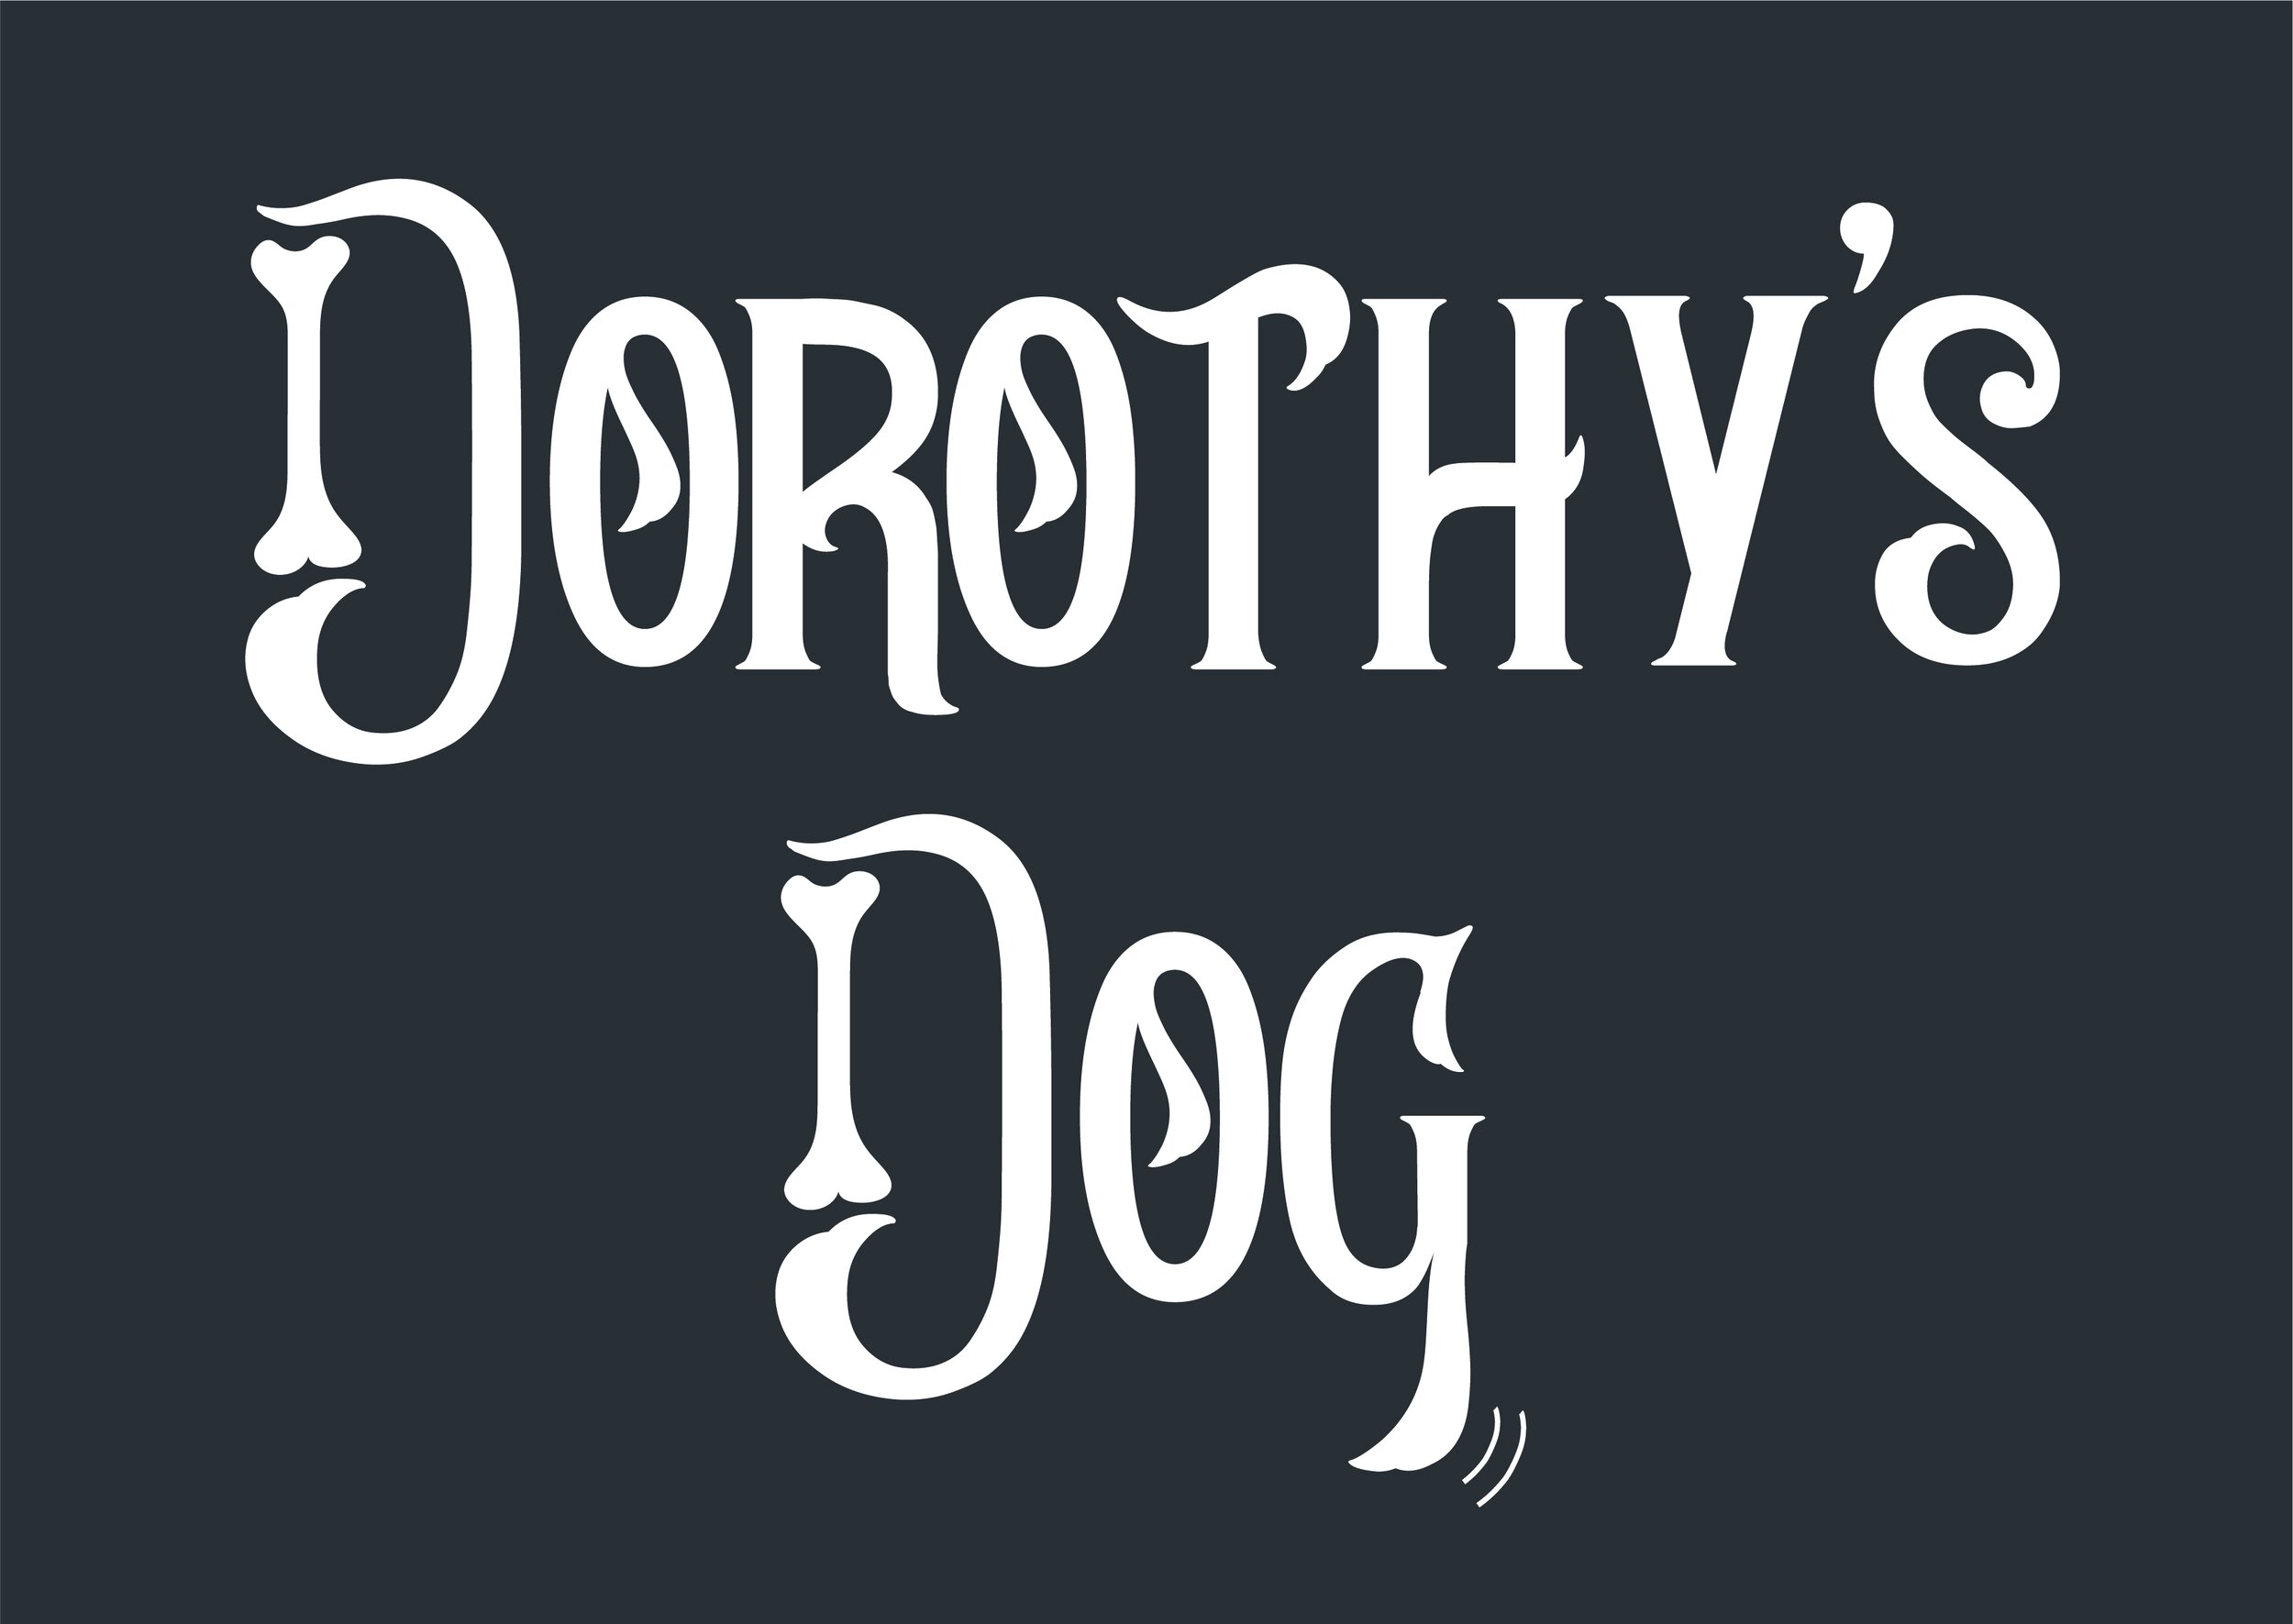 DOROTHY'S DOG FINAL ARTWORK FILES_LOGO WHITE.jpg